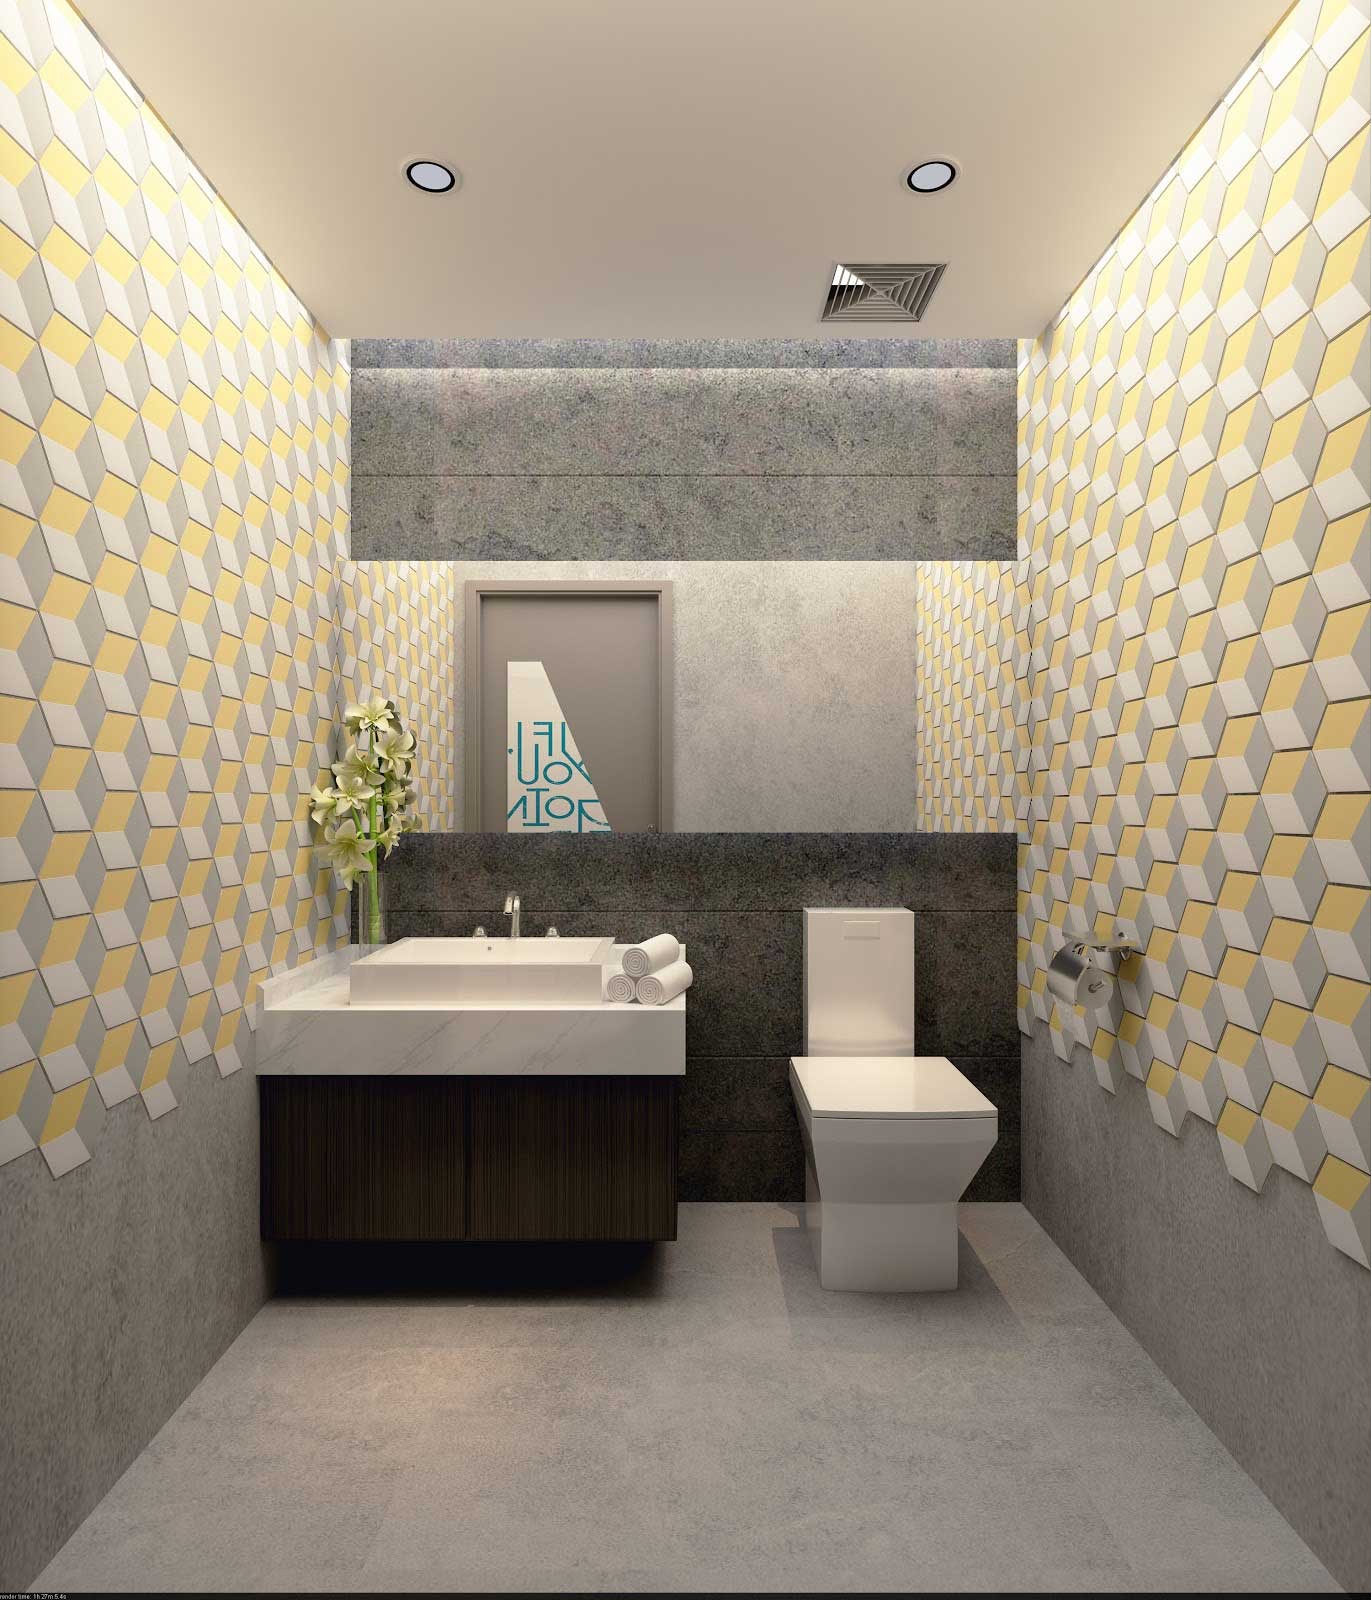 Thiết kế nhà vệ sinh đẹp và tiện lợi là điều tất yếu. Bức ảnh về gạch ốp nhà vệ sinh sẽ giúp bạn thấy rõ chất lượng sản phẩm và cách sắp xếp để không gian trở nên hoàn hảo hơn. Cùng khám phá ngay bức ảnh này để biết thêm chi tiết.